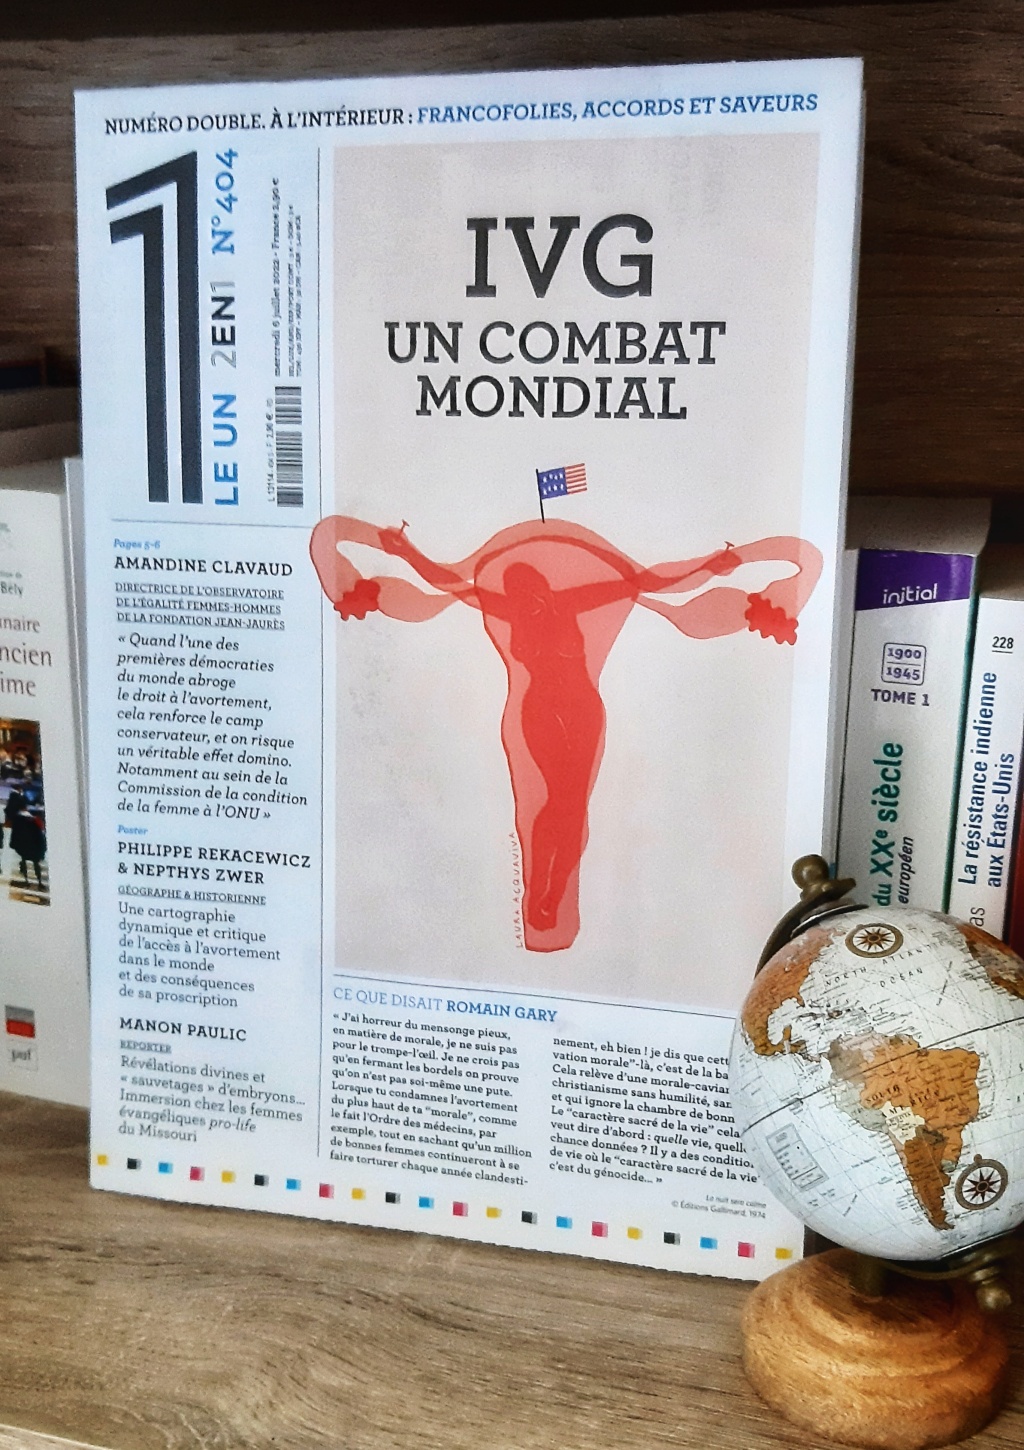 Le Un consacre son numéro à l’IVG dans le monde